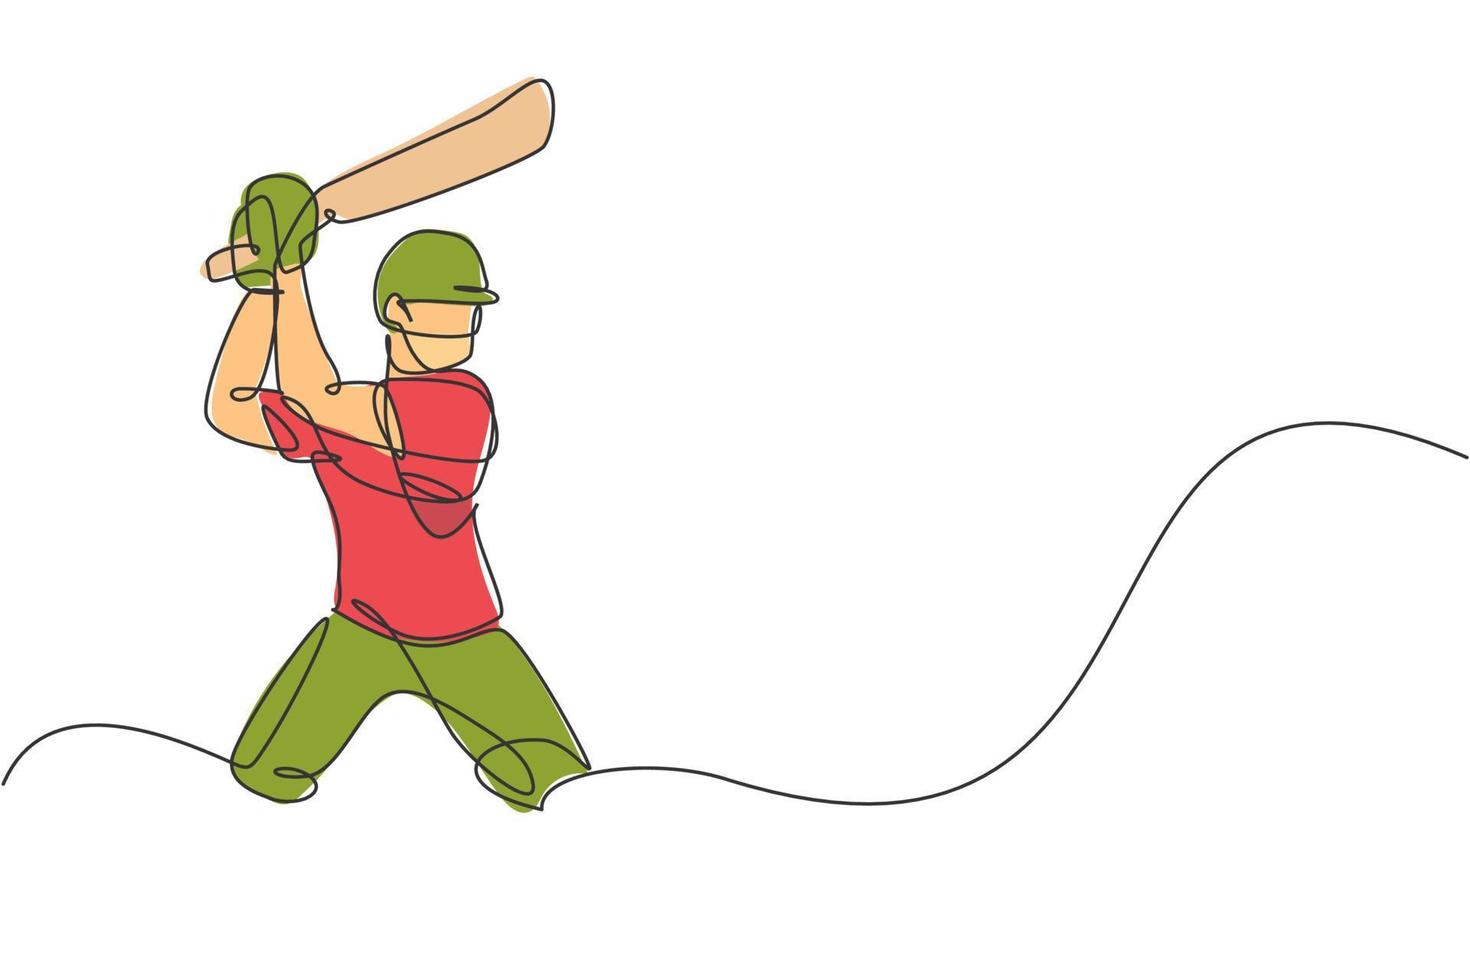 disegno a linea continua singola di un giovane giocatore agile di cricket in piedi e pronto a colpire l'illustrazione vettoriale della palla. concetto di esercizio sportivo. design alla moda di una linea per i media di promozione del cricket